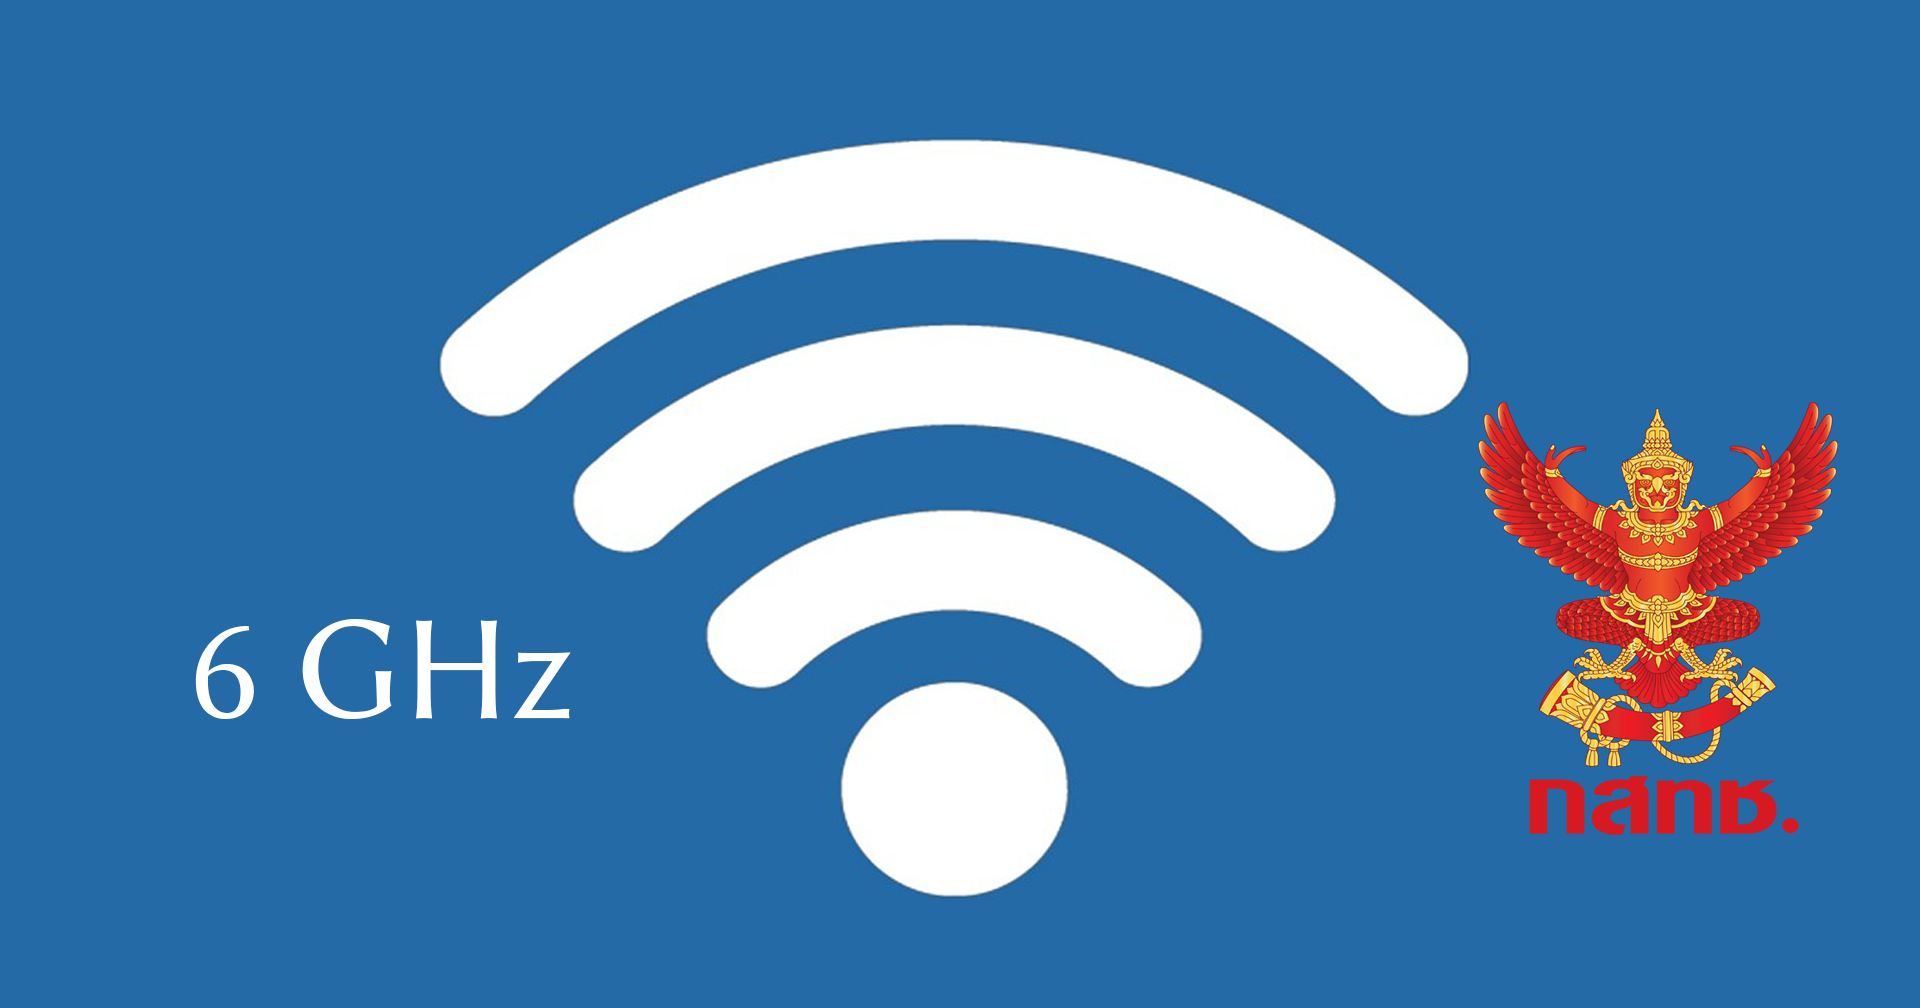 กสทช. อนุมัติคลื่นความถี่ที่ไม่ต้องขออนุญาตใช้งาน “6 GHz” ในไทย เตรียมใช้ Wi-Fi 6E ได้เลย